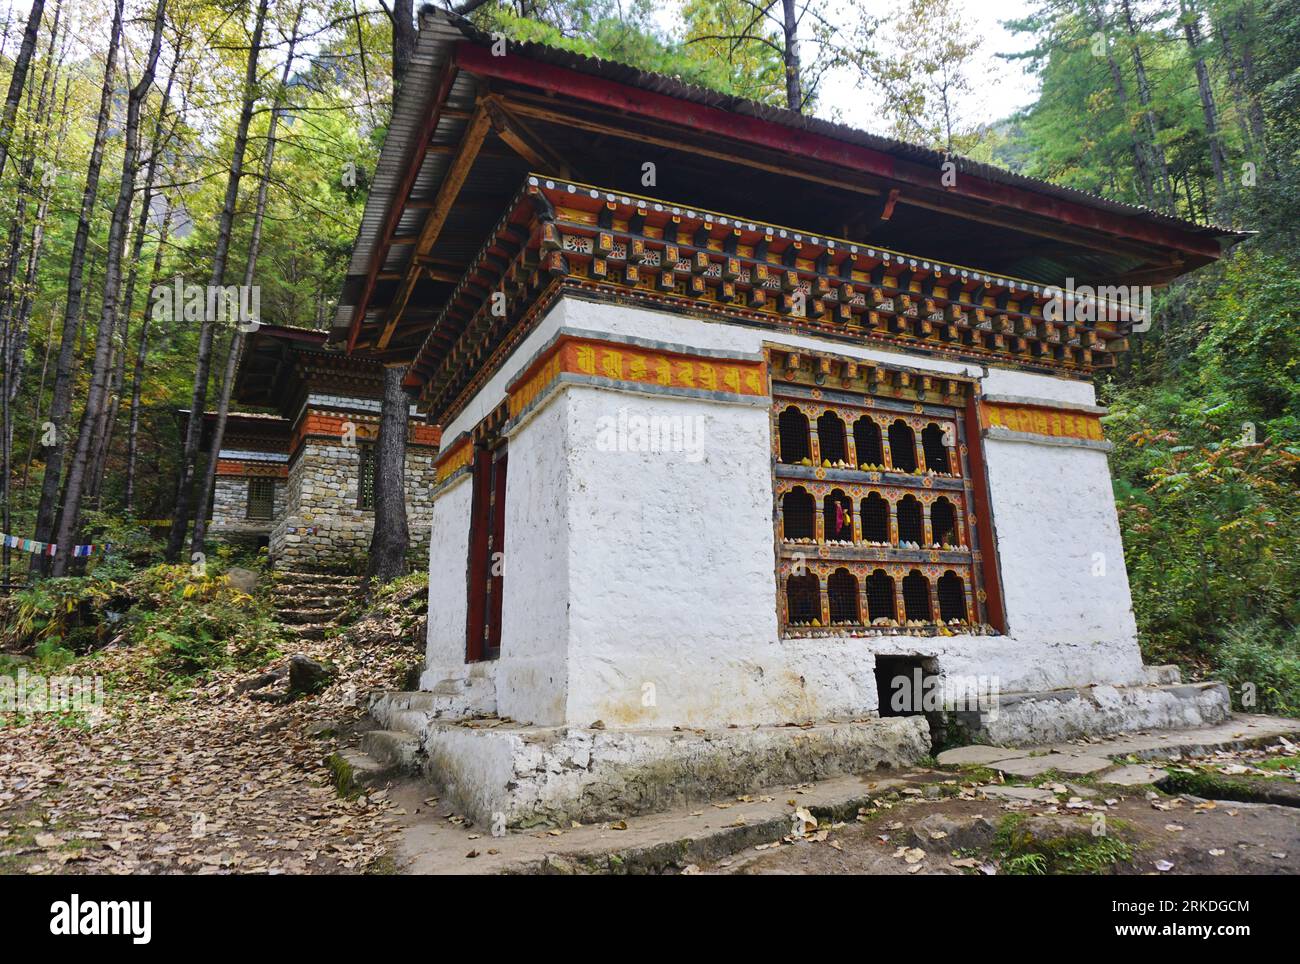 Trois bâtiments traditionnels en pierre avec des boiseries peintes bhoutanaises typiques abritent d'énormes roues à prière tournées par l'eau d'une source de montagne en cascade Banque D'Images